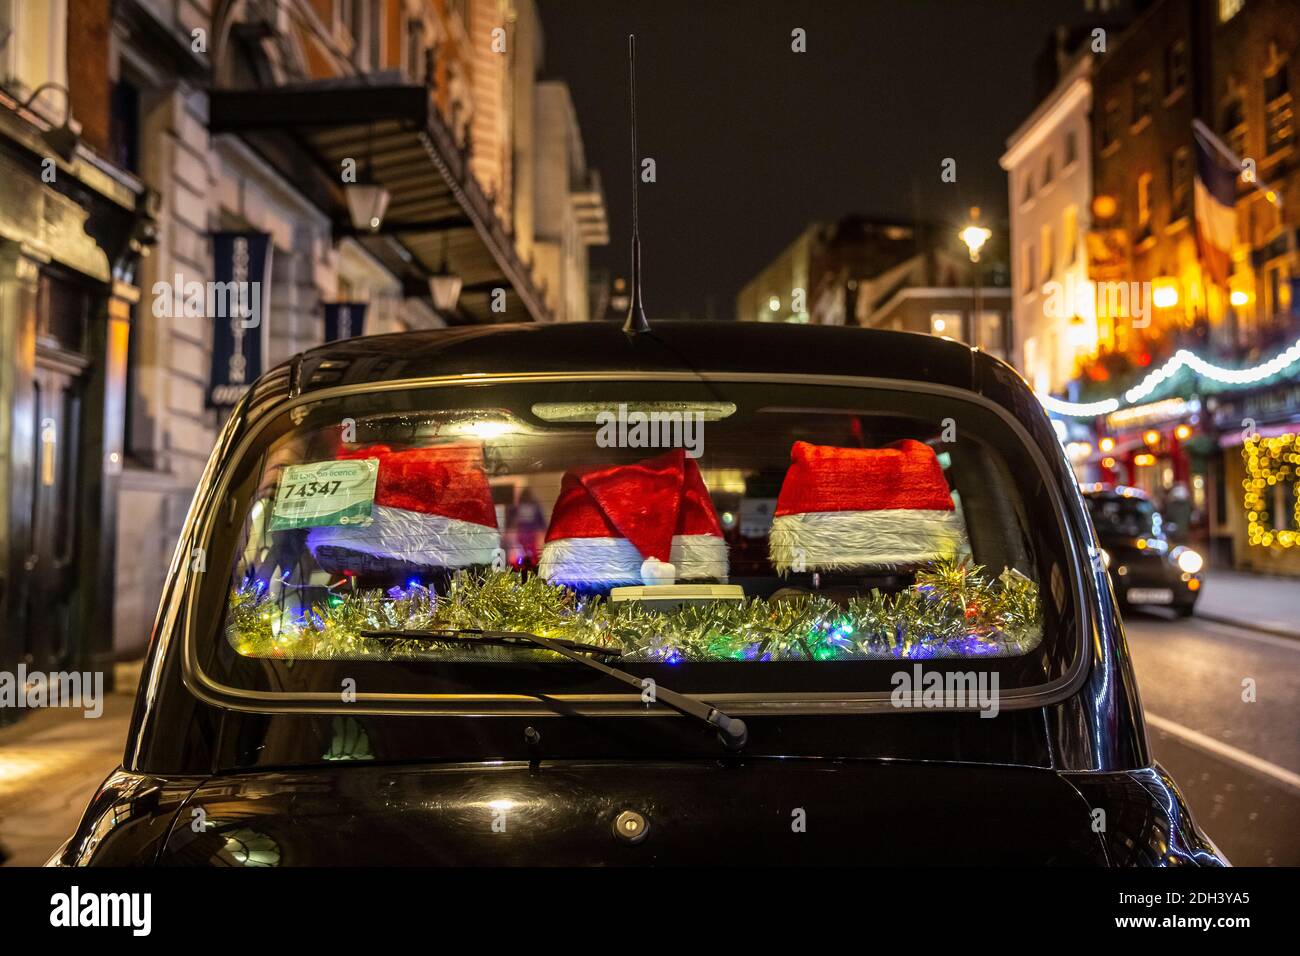 Ein rückes Taxi mit festlichen Weihnachtsmützen, die das hintere Fenster schmücken, sitzt in Covent Garden, London, England, Großbritannien Stockfoto